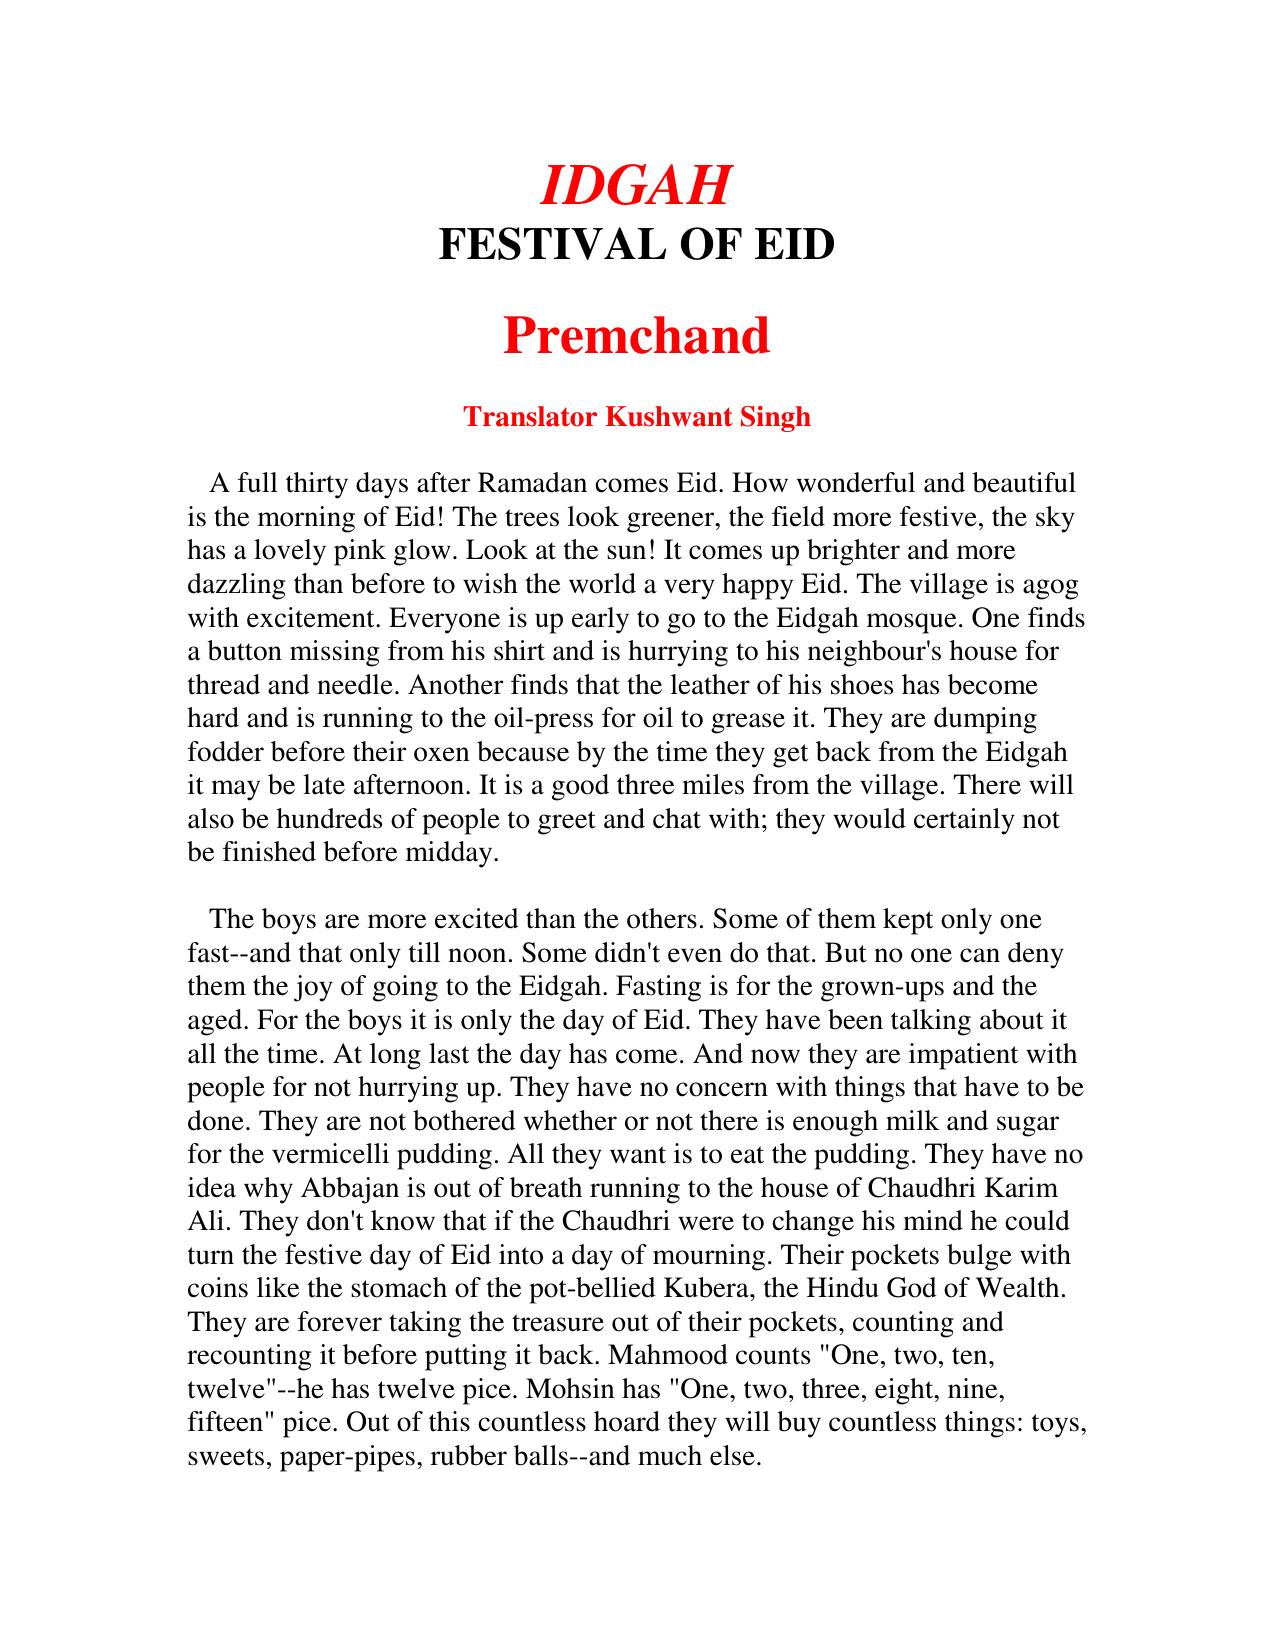 Idgah Festival of Eid